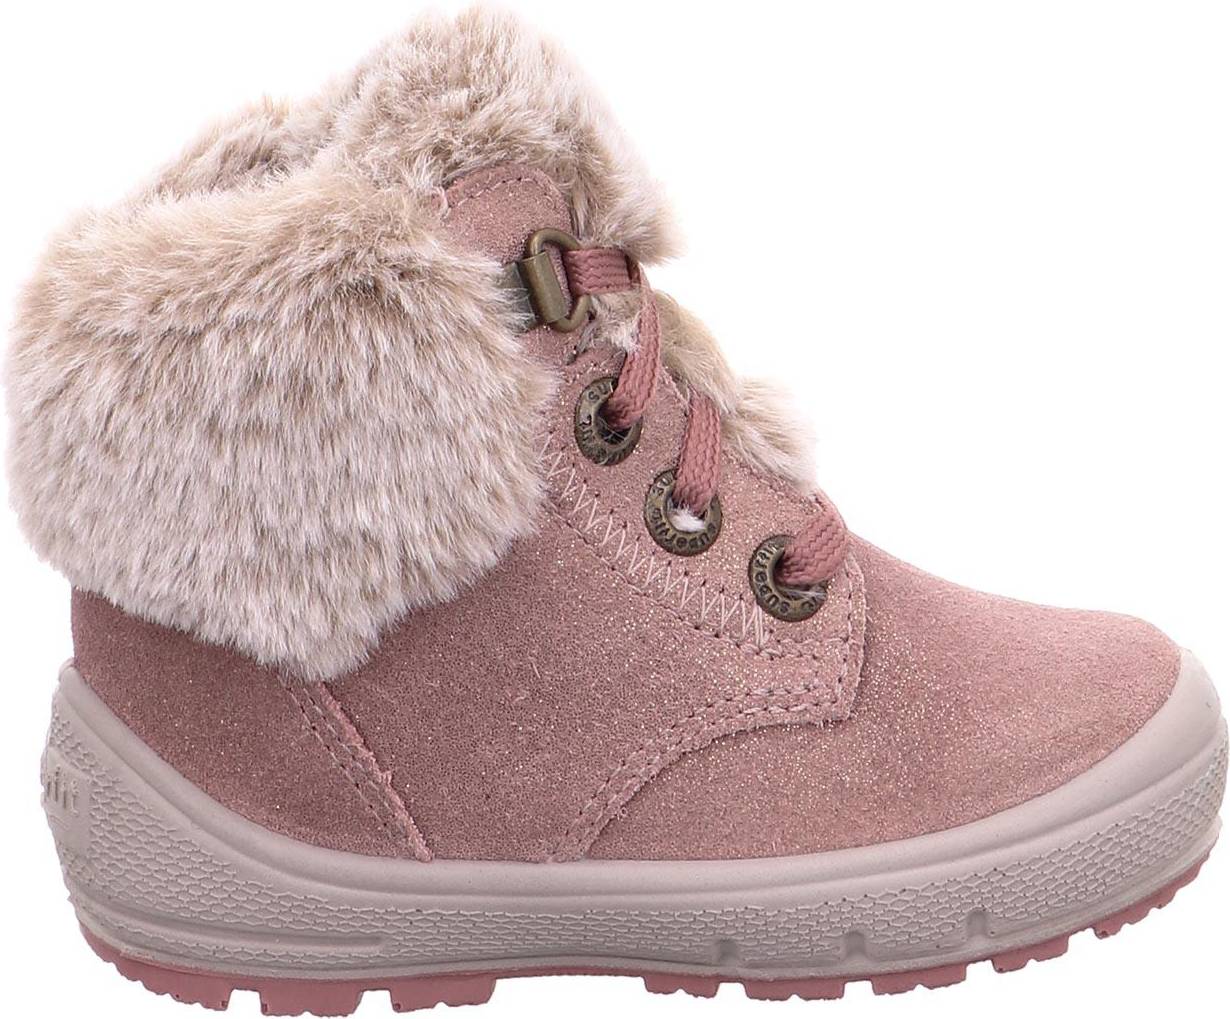  Bild på Superfit Groovy Boots - Pink vinterskor